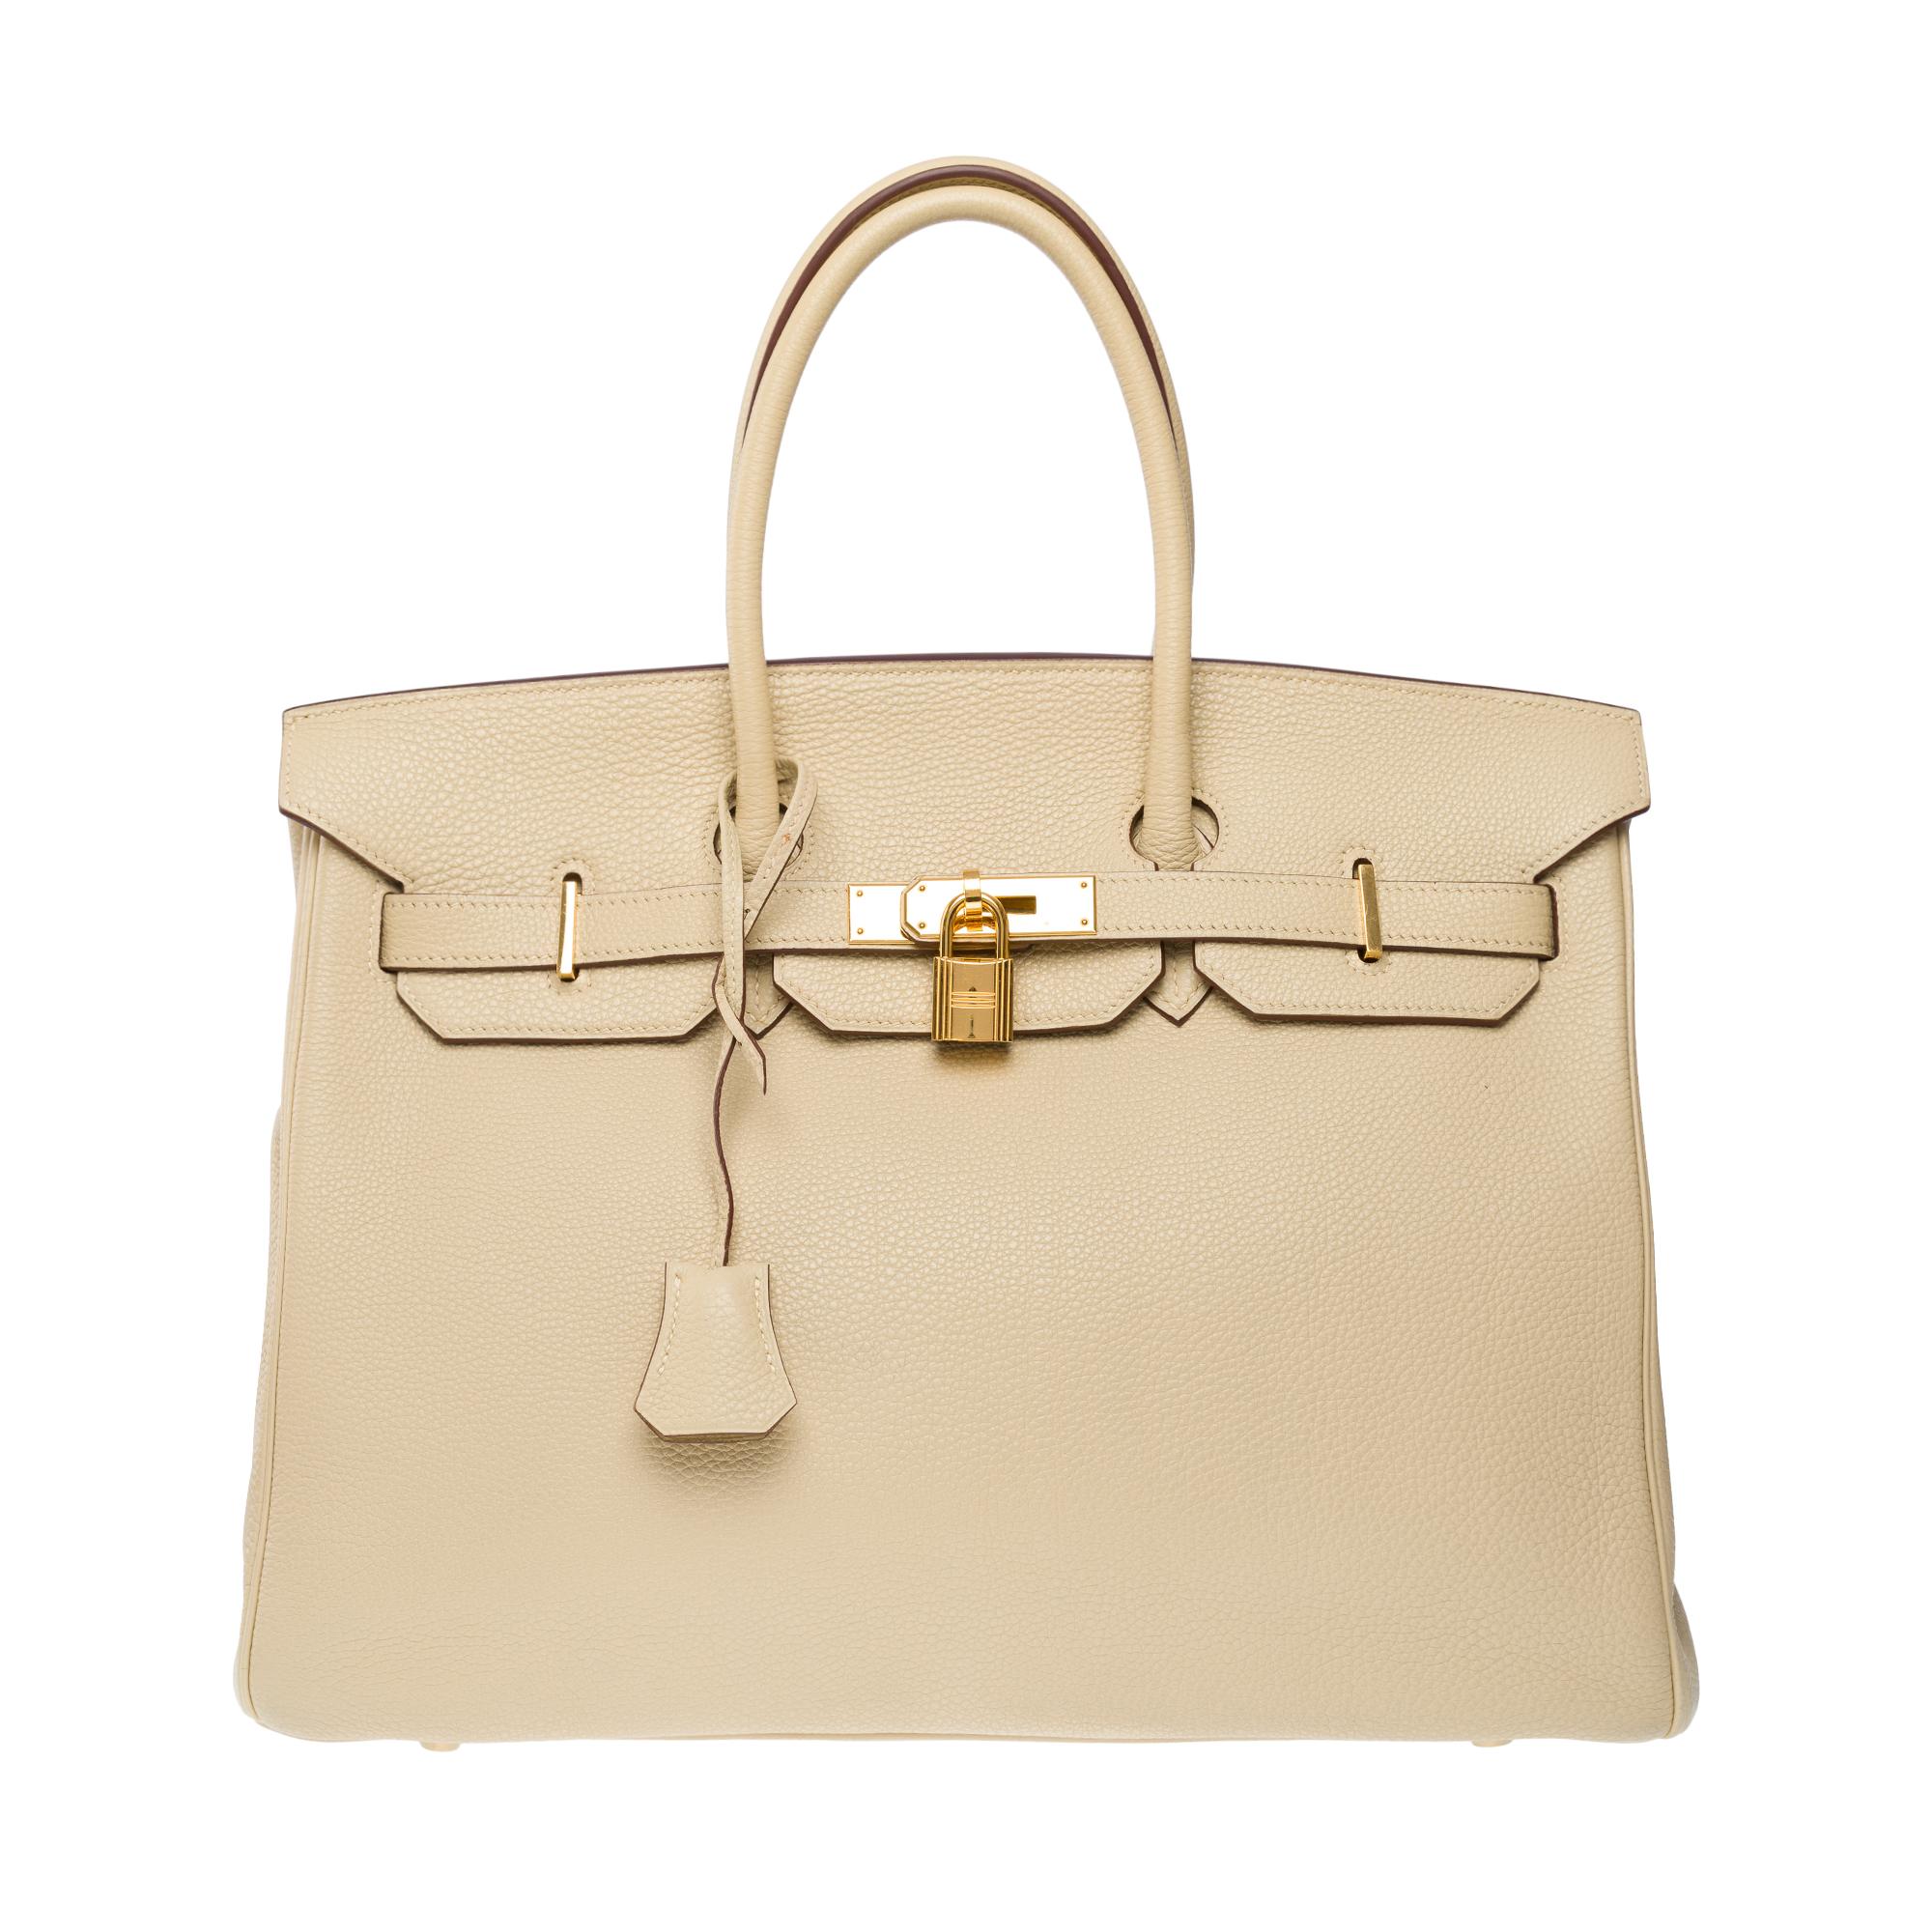 Amazing Hermès Birkin 35 handbag in Parchemin Togo leather, GHW In Good Condition In Paris, IDF